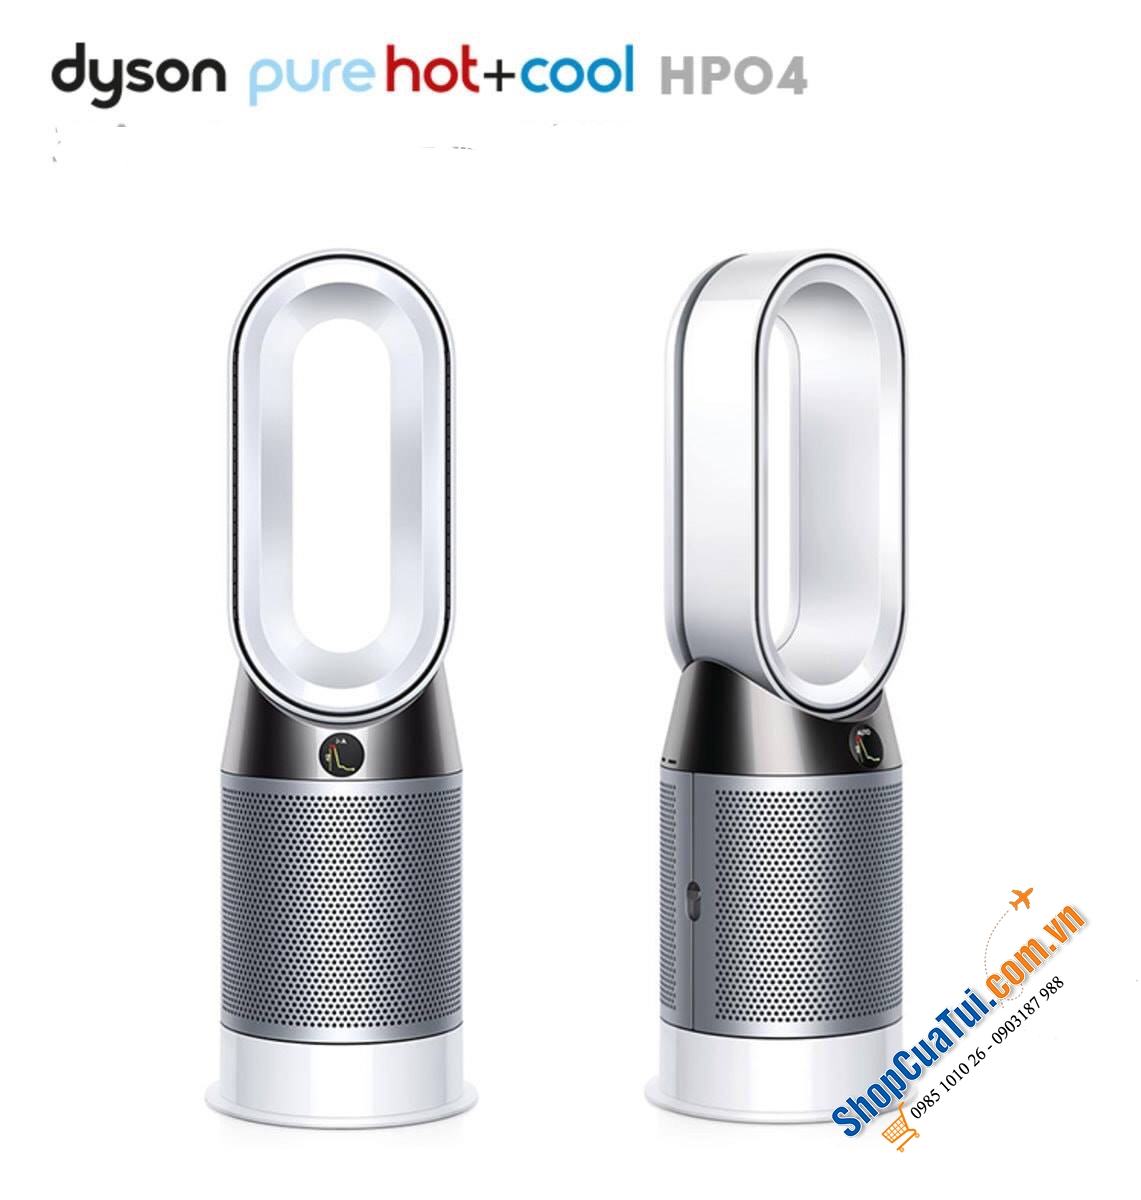 QUẠT KHÔNG CÁNH DYSON HP04 - Dyson Pure Hot + Cool ™ là máy lọc không khí, quạt sưởi và quạt mát.